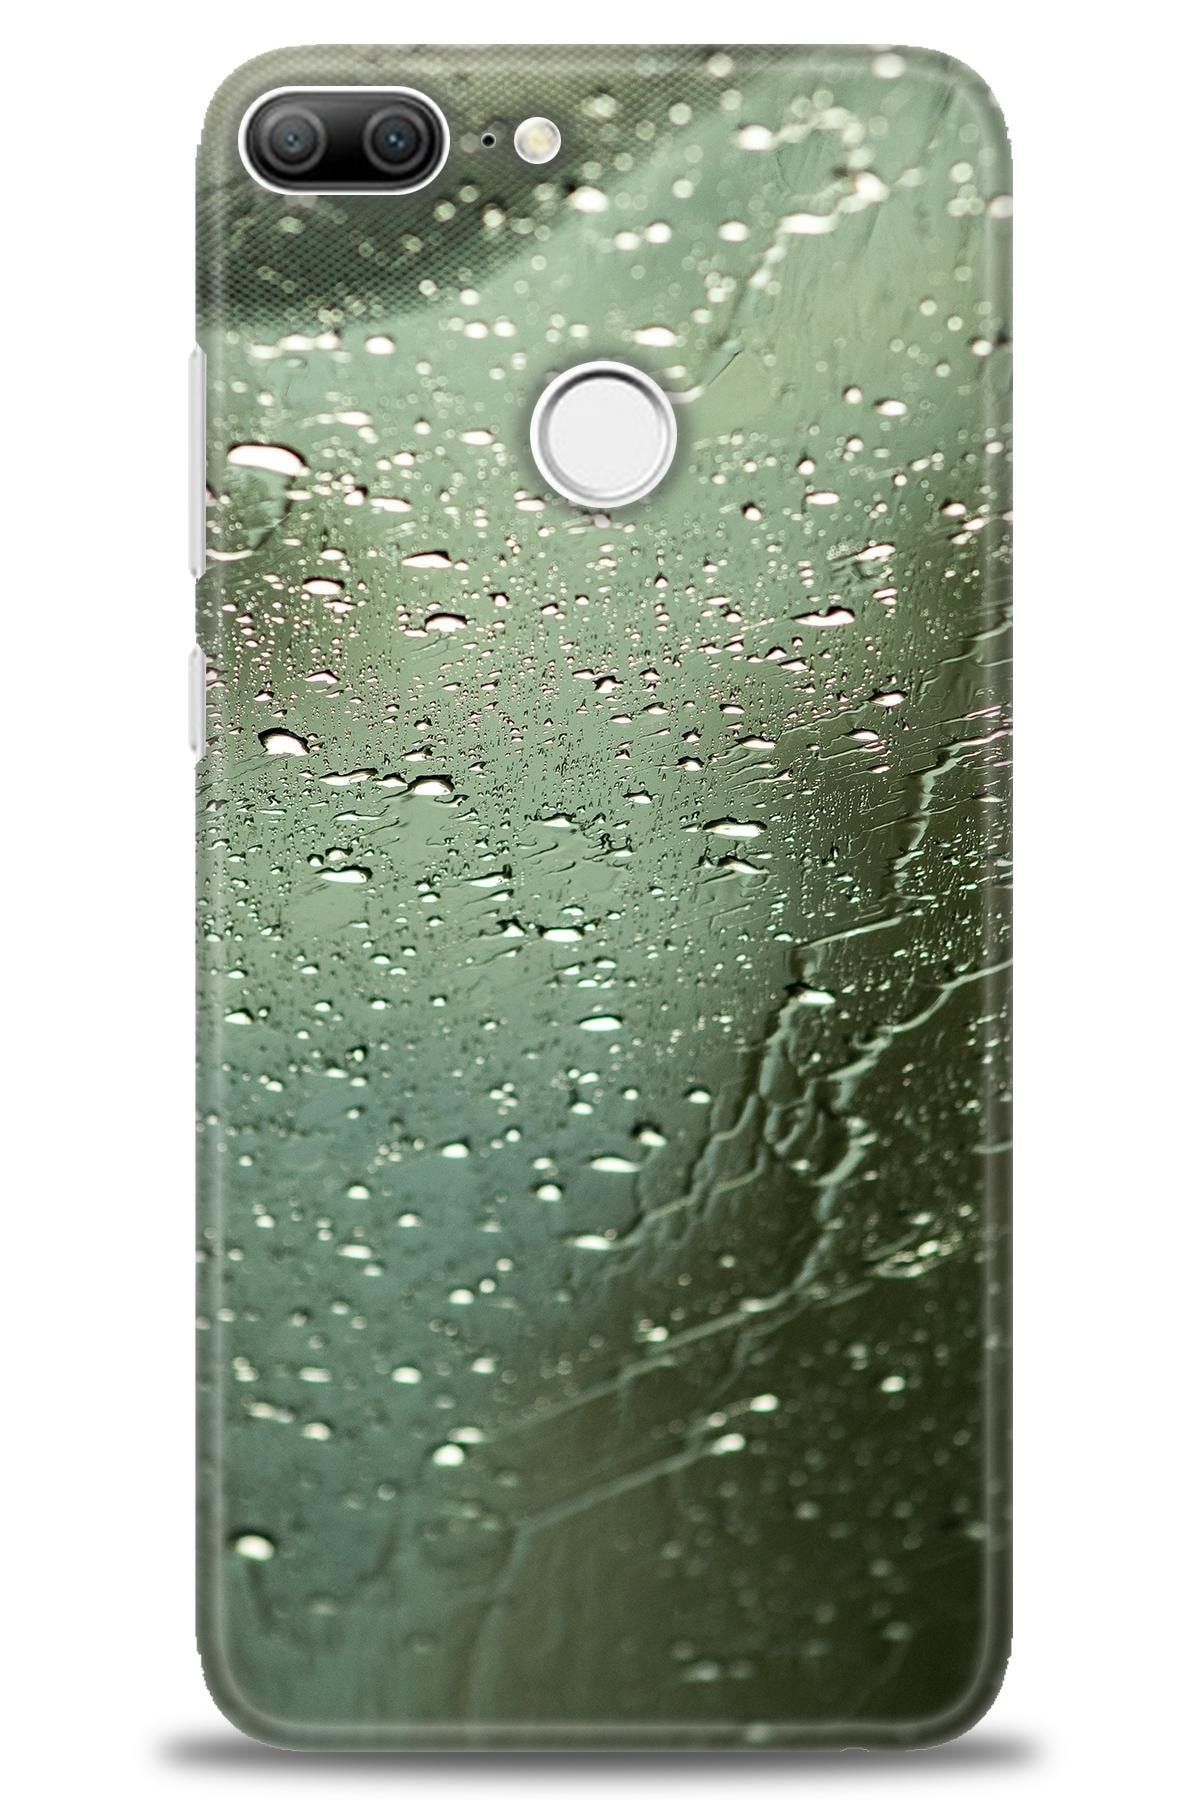 Noprin Huawei Honor 9 Lite Kılıf Hd Baskılı Kılıf - Camdaki Yağmur + Nano Micro Ekran Koruyucu